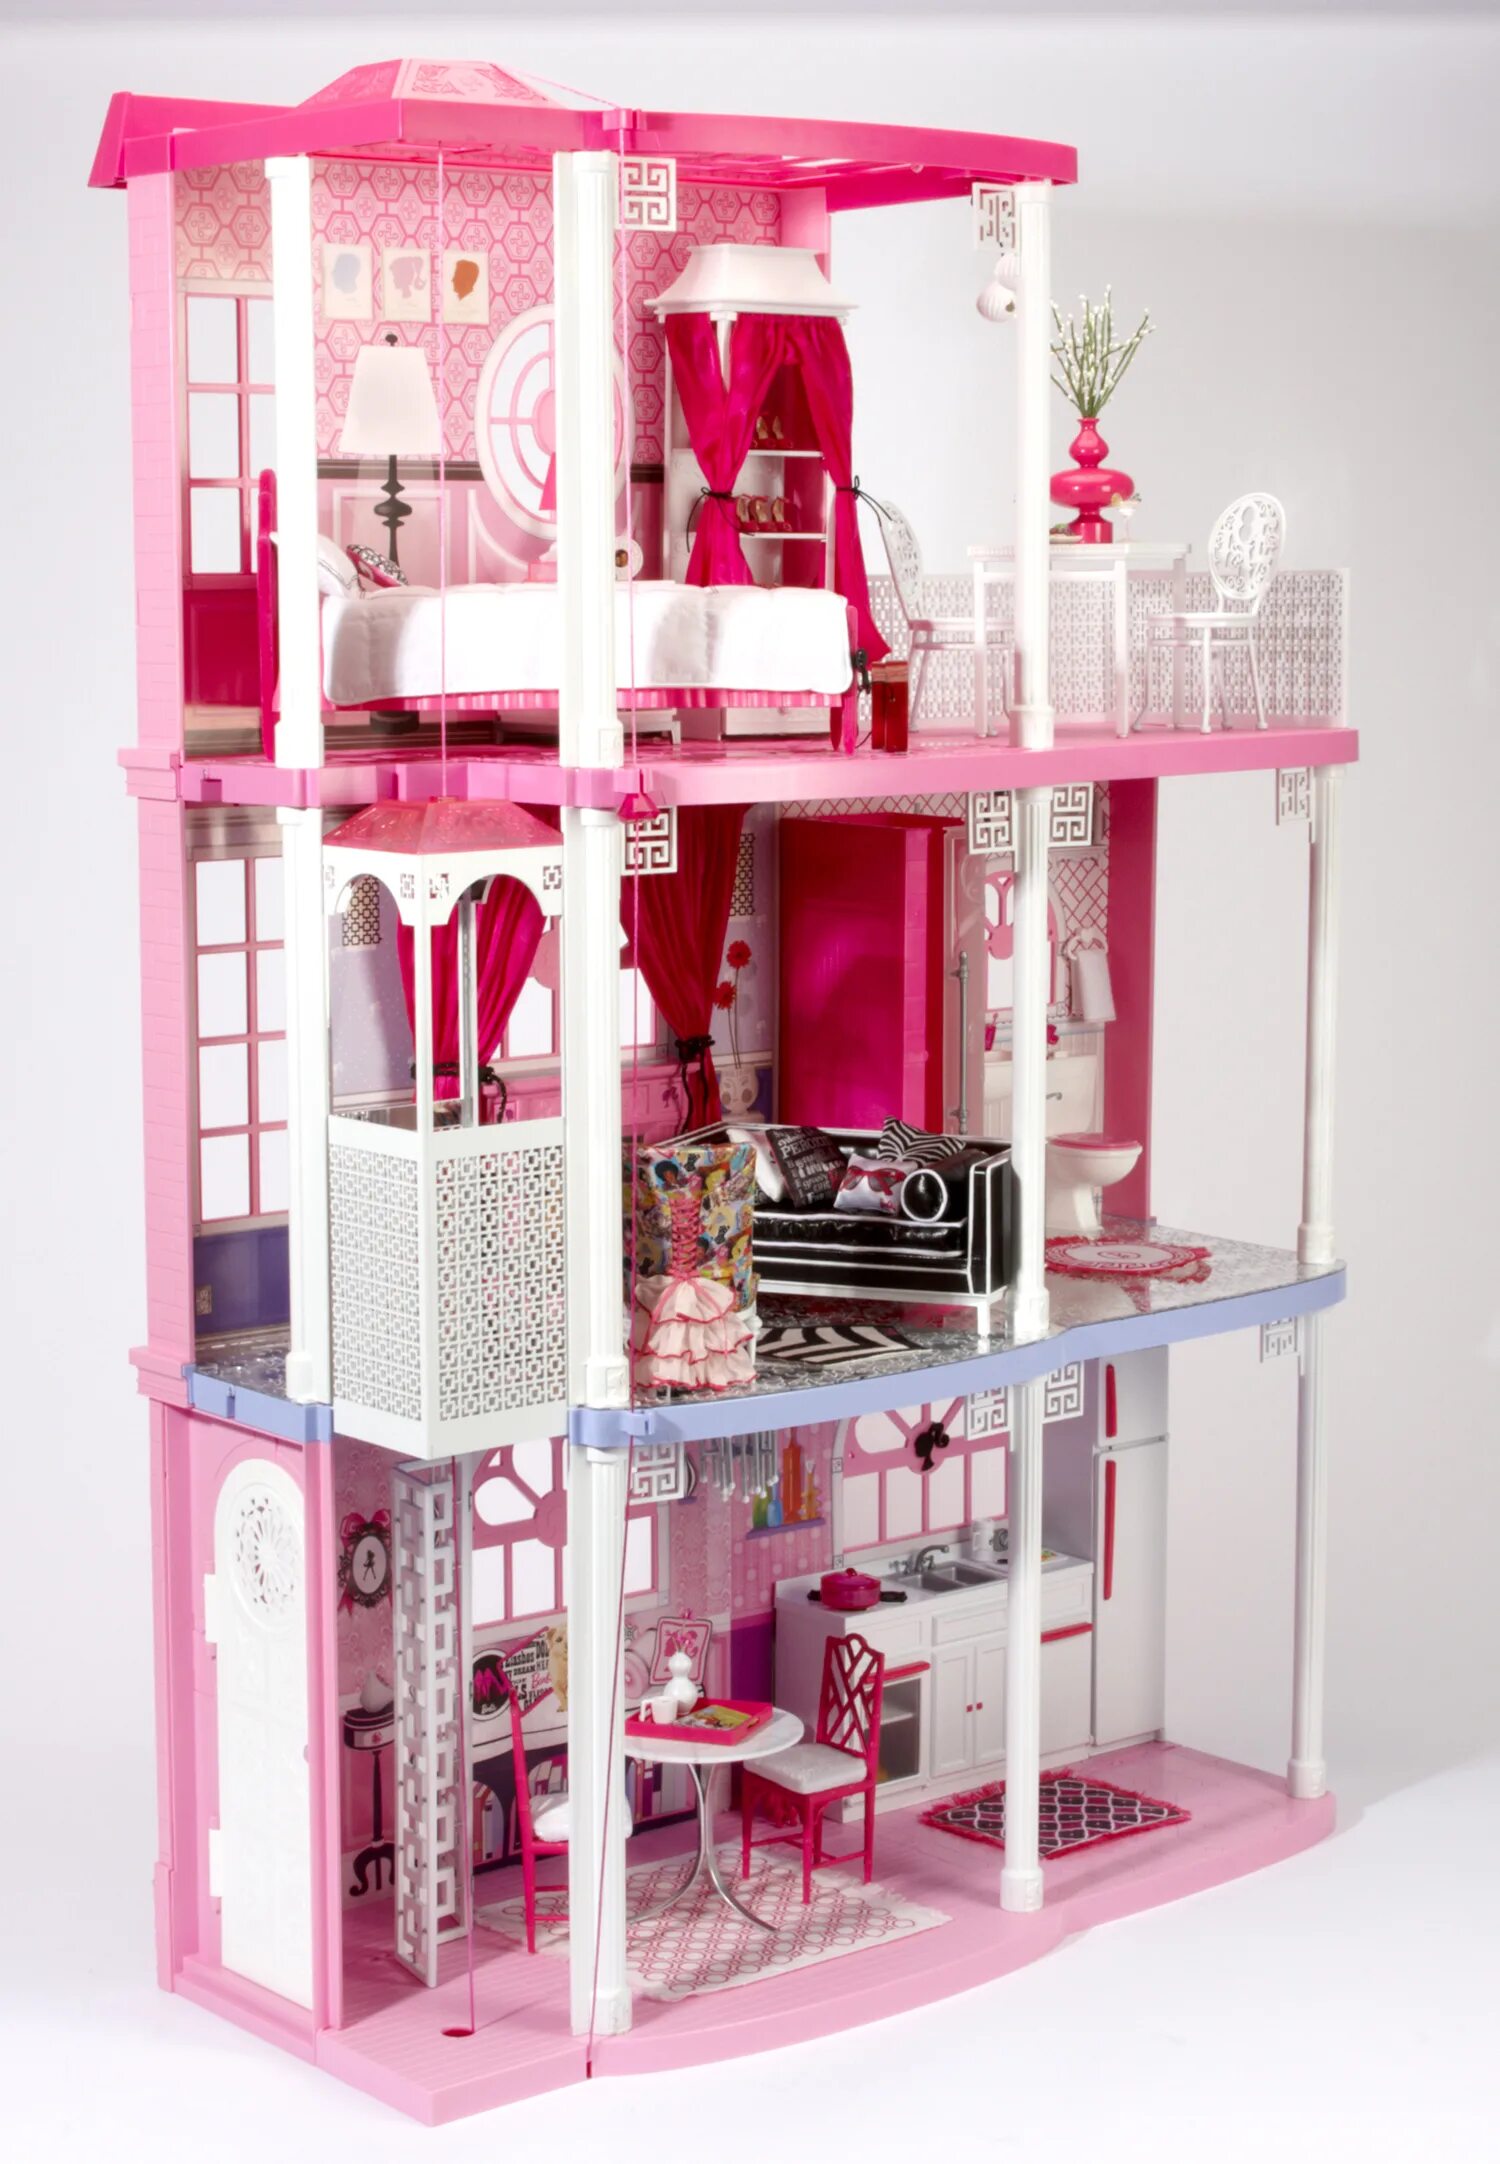 Барби Дрим Хаус. Домик Барби домик Барби. Барби коллекция Дрим Хаус. Кукольный дом Barbie Dreamhouse.